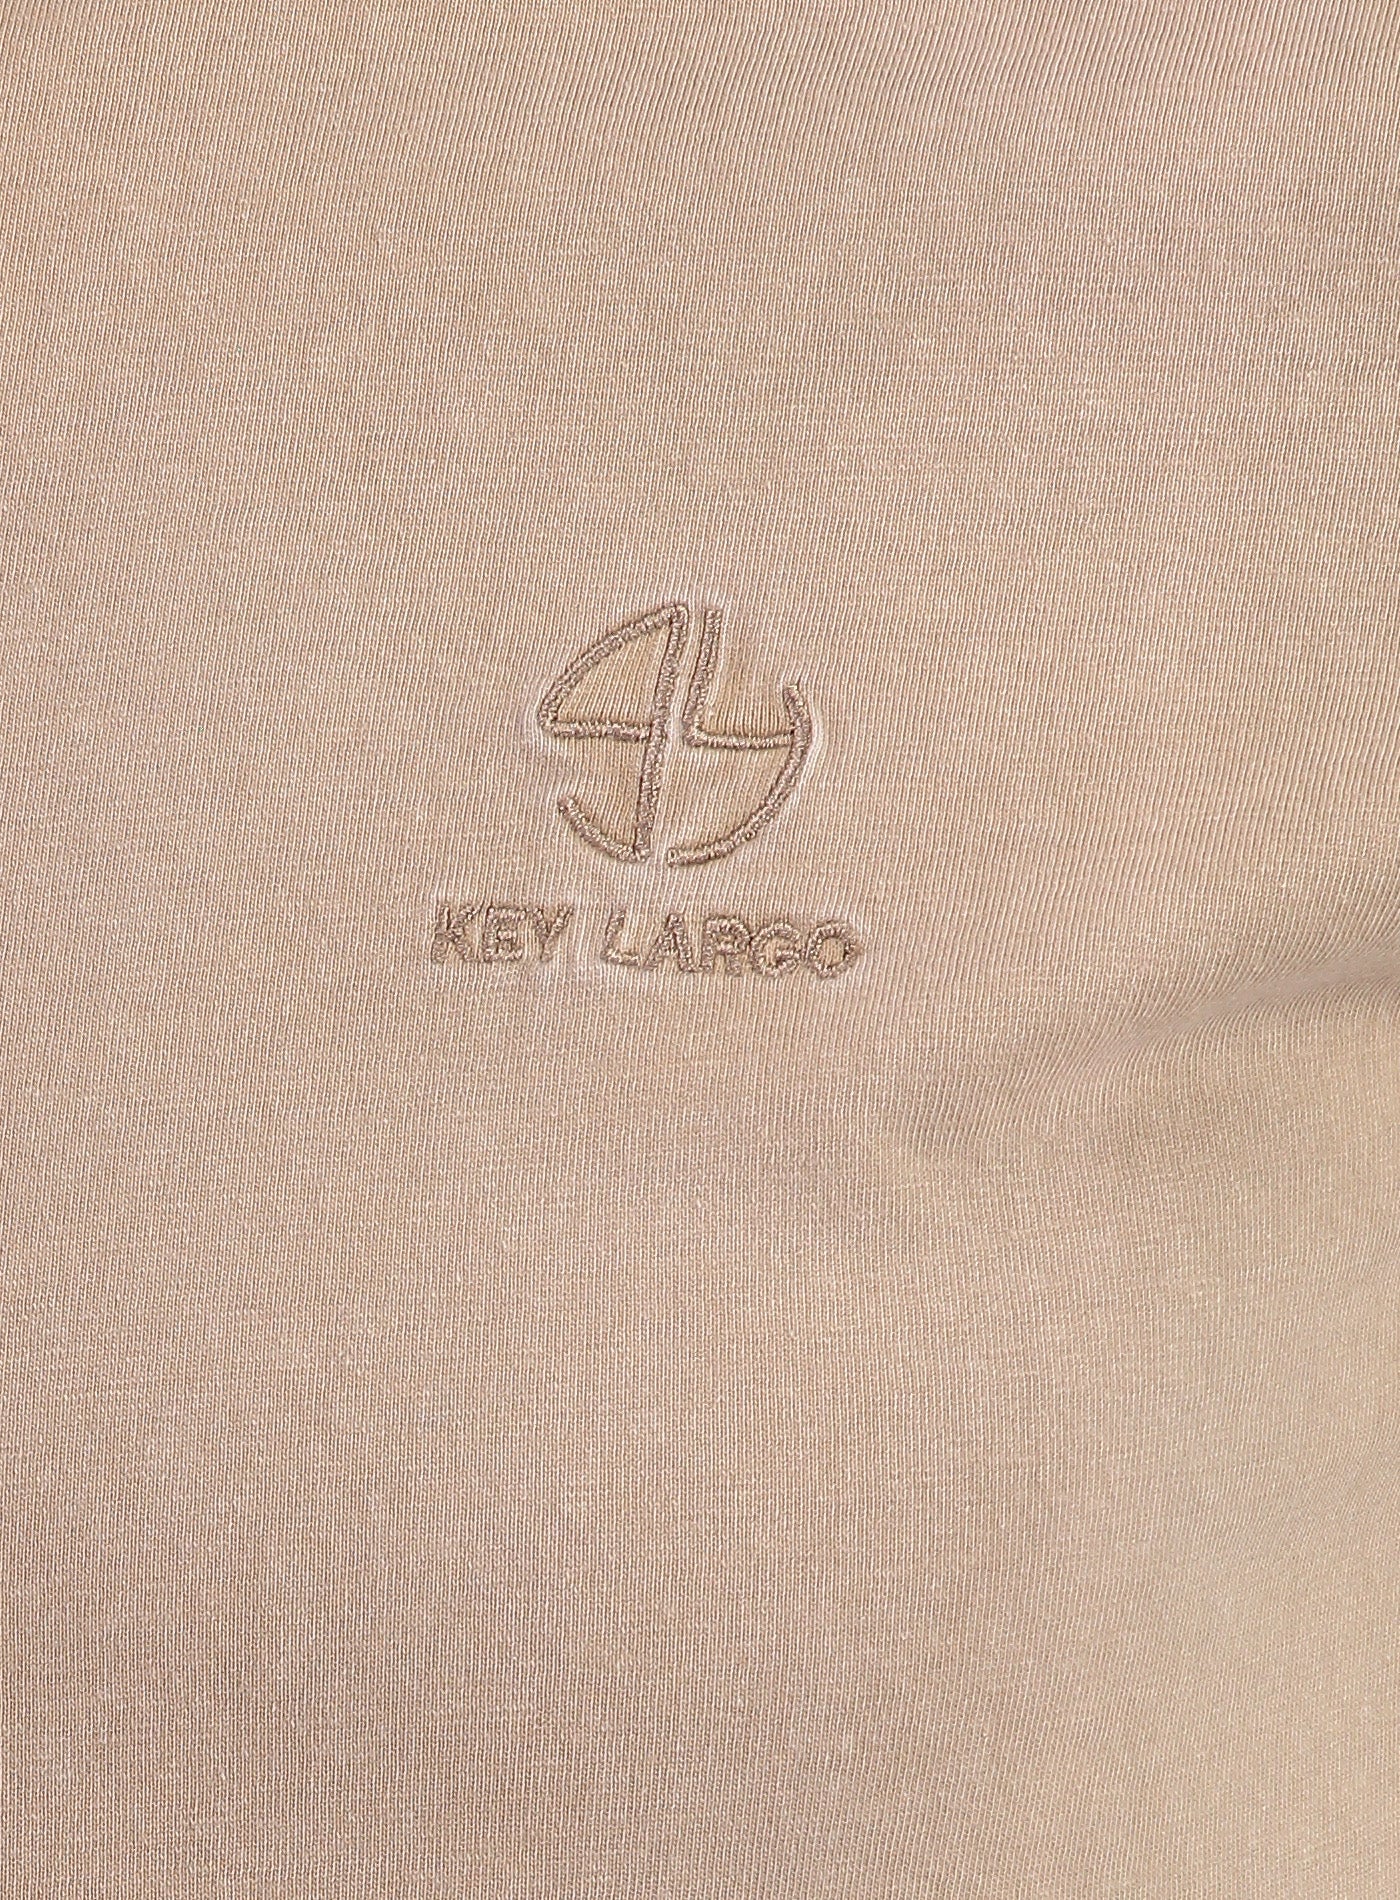 Key Largo | MT METROPOL round | 1004 beige